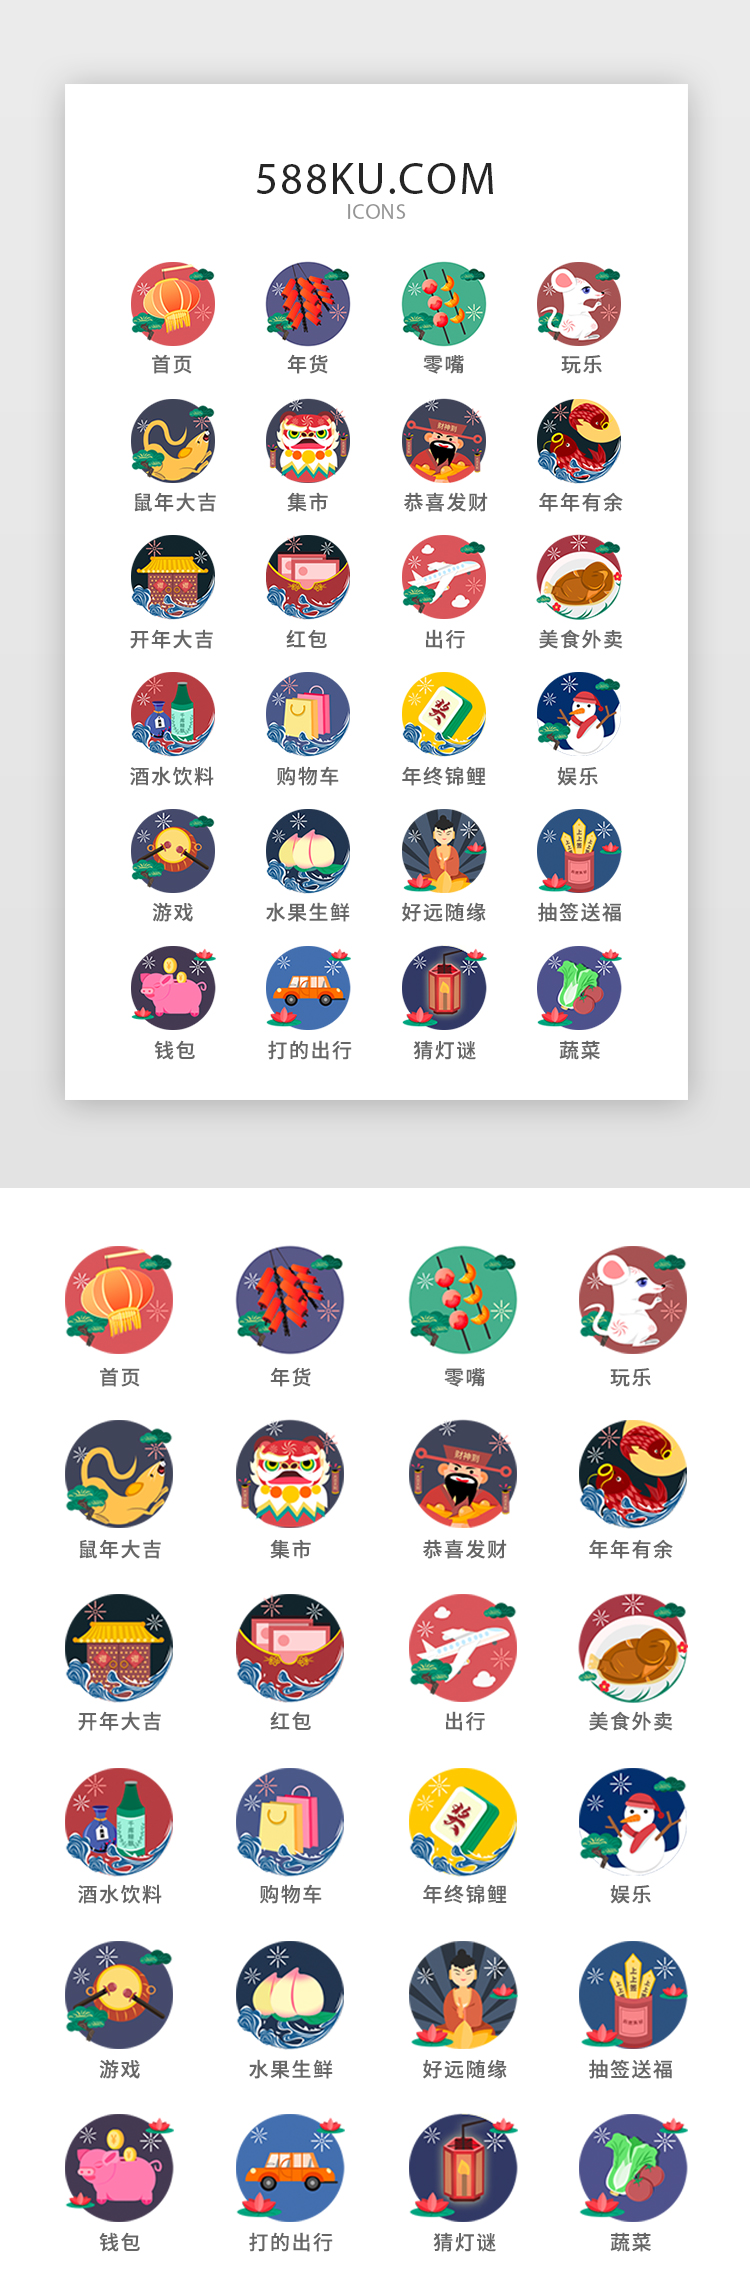  鼠年过年新年春节图标icons图片